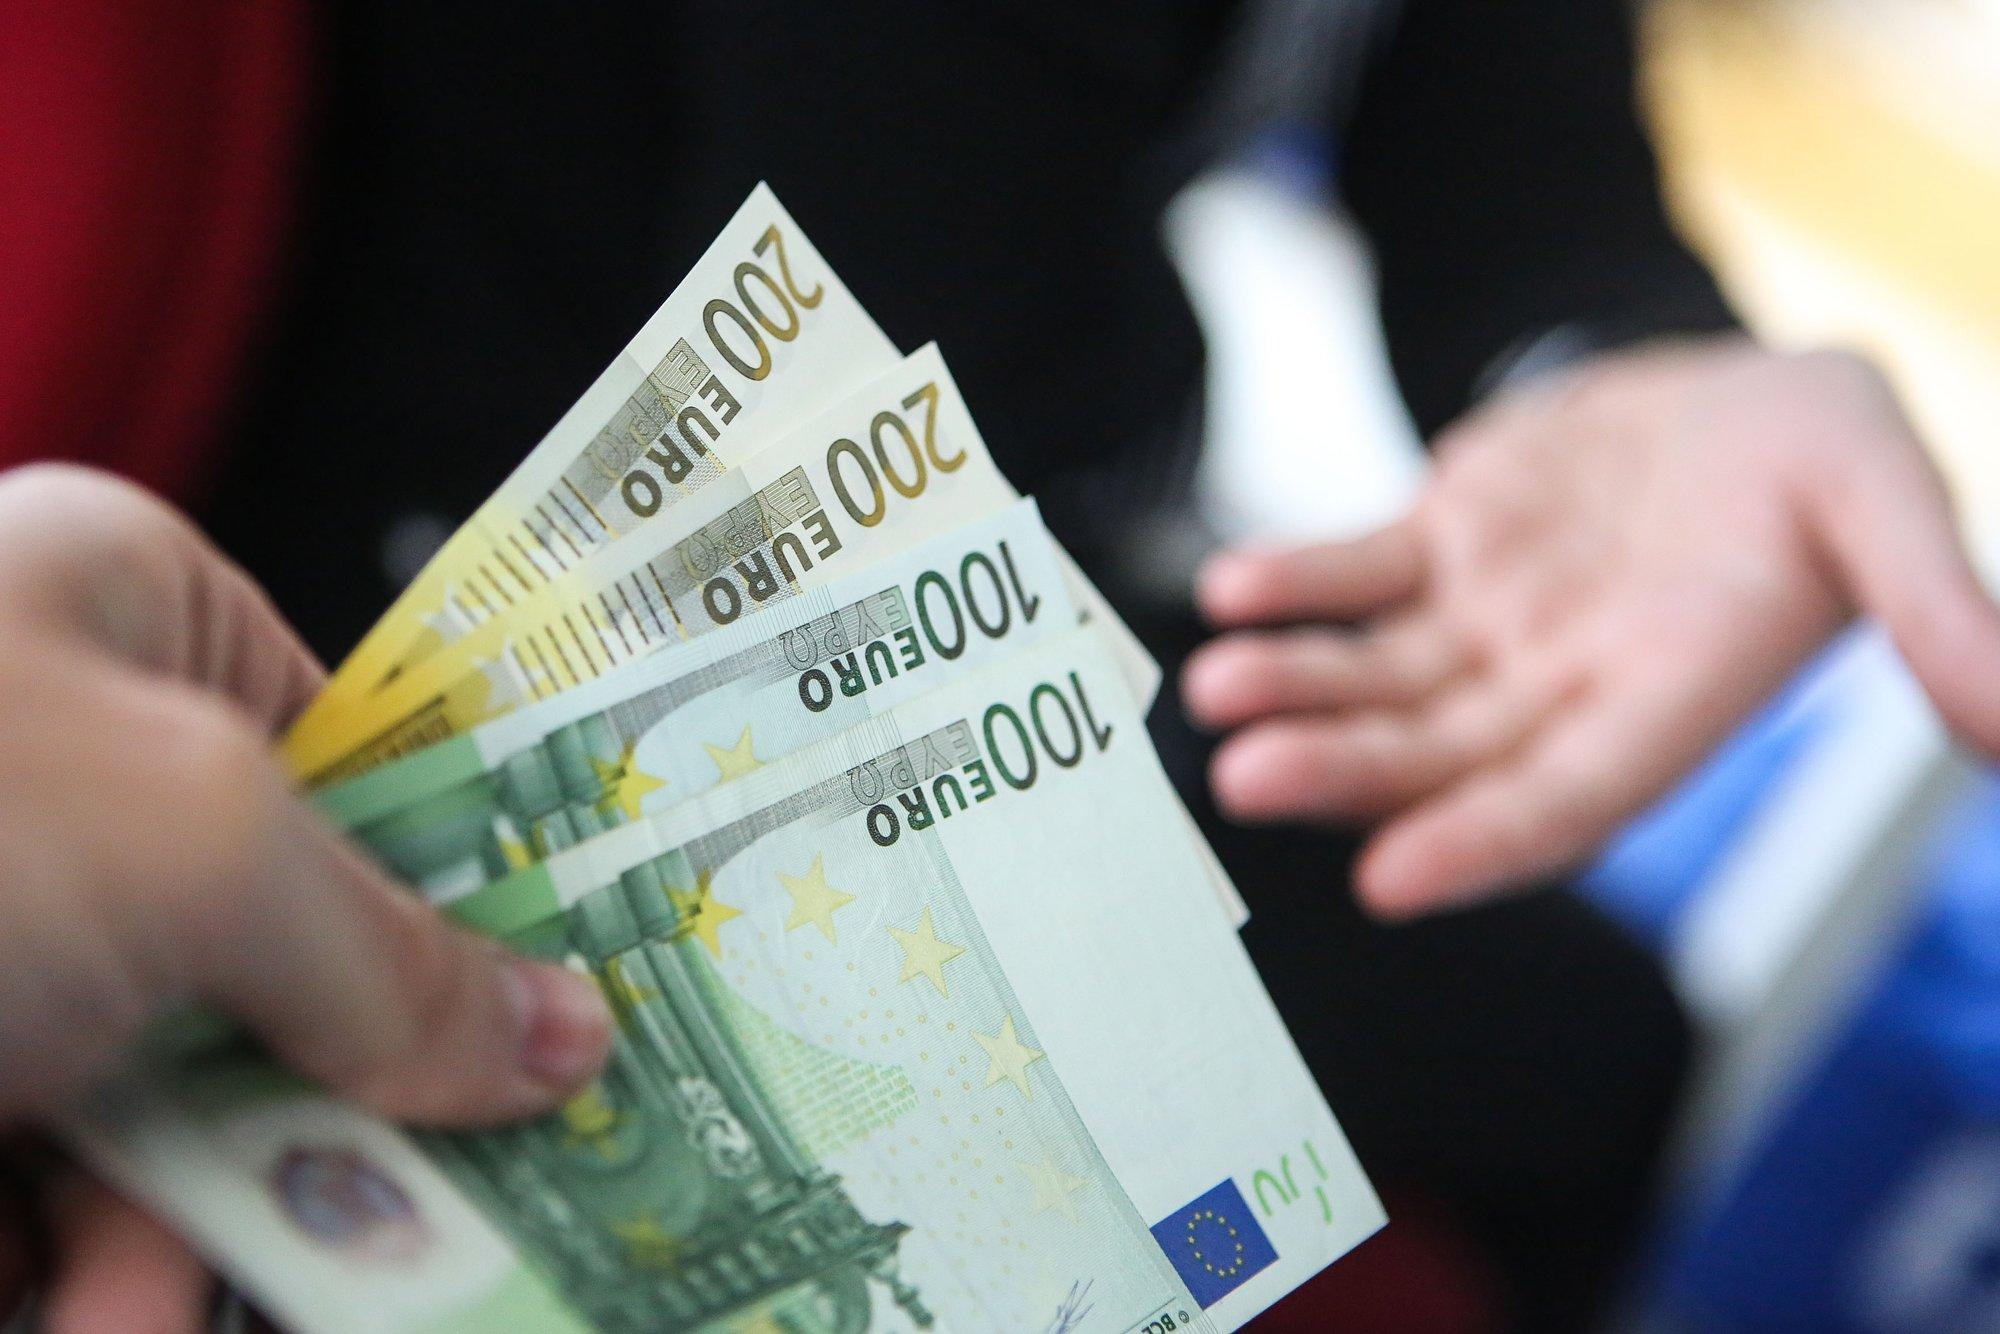 Įspūdingiausios algos Lietuvoje: vienoje įmonėje atlyginimai siekia 28 tūkst. eurų